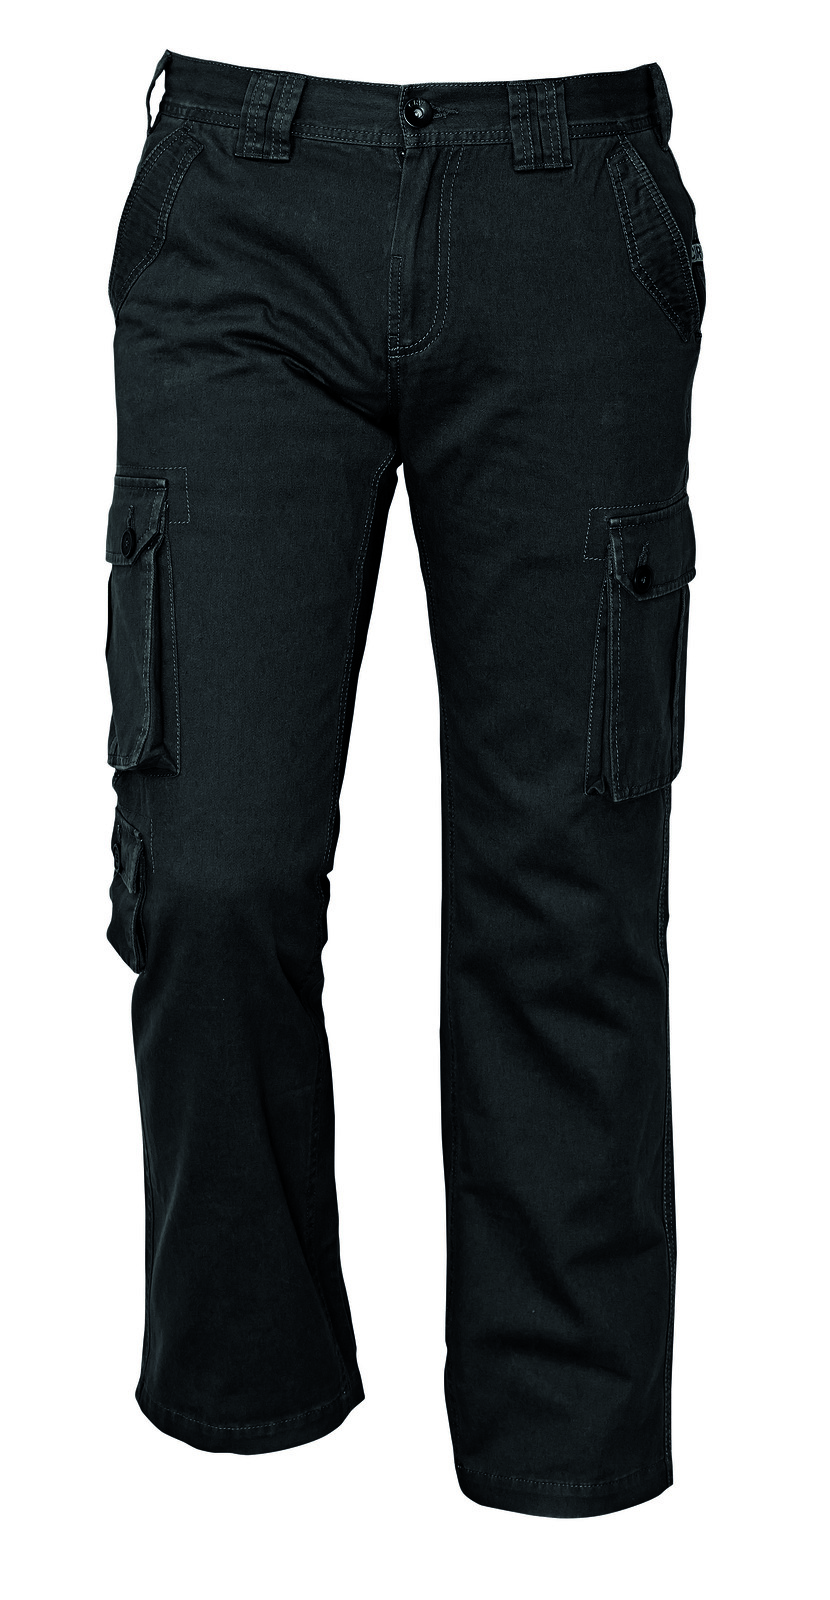 Pánske nohavice Chena kapsáče - veľkosť: XL, farba: čierna